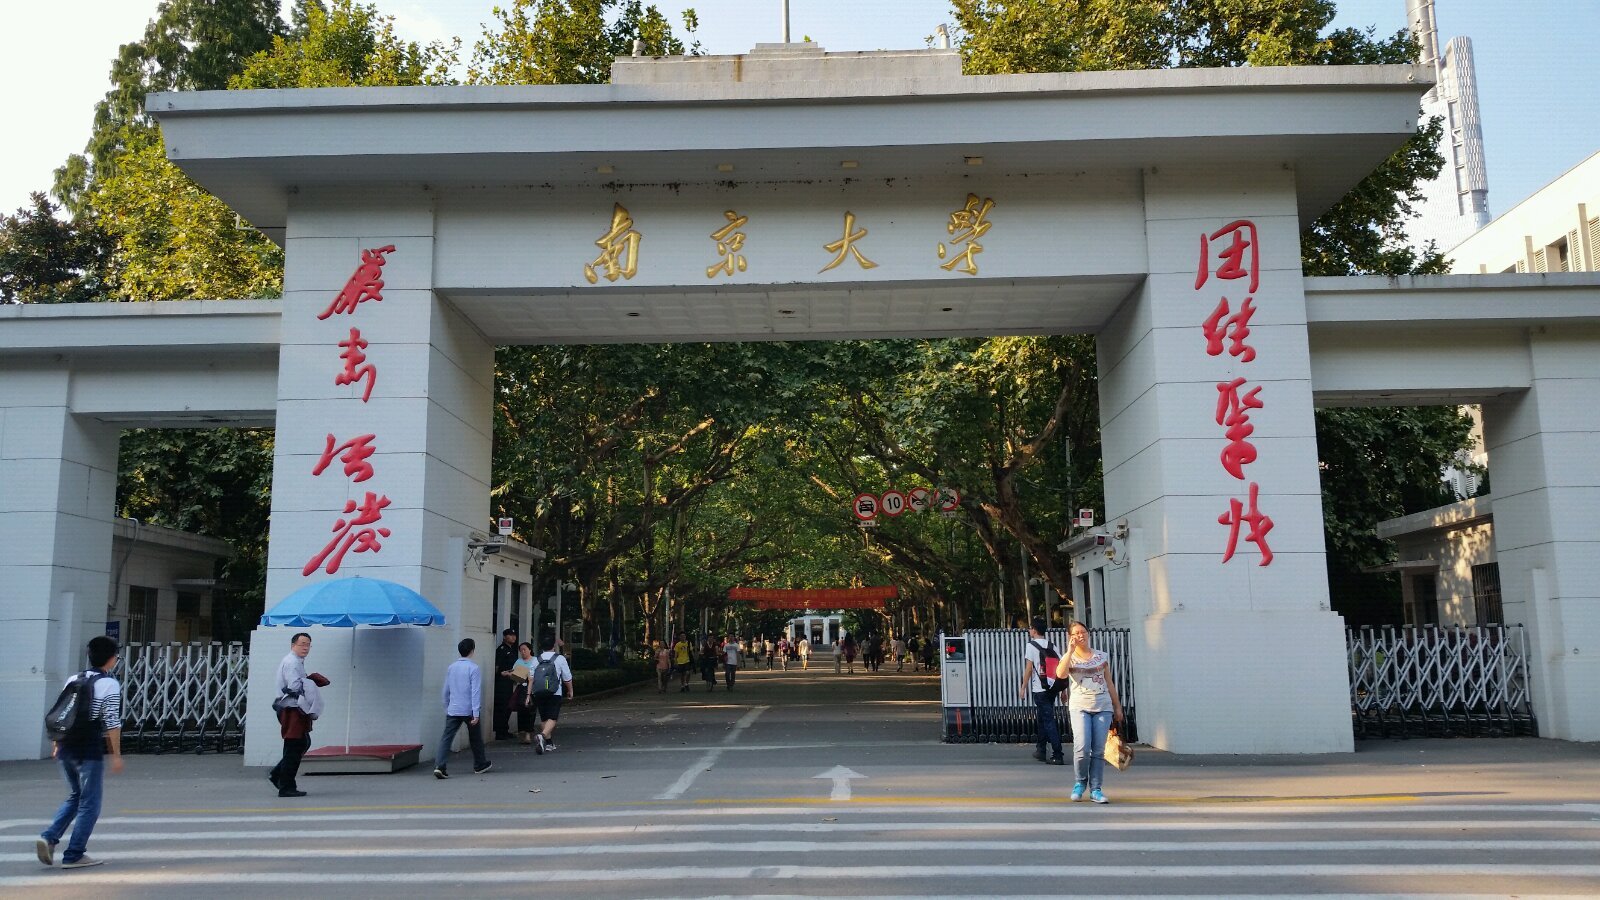 南京大学照片高清正门图片